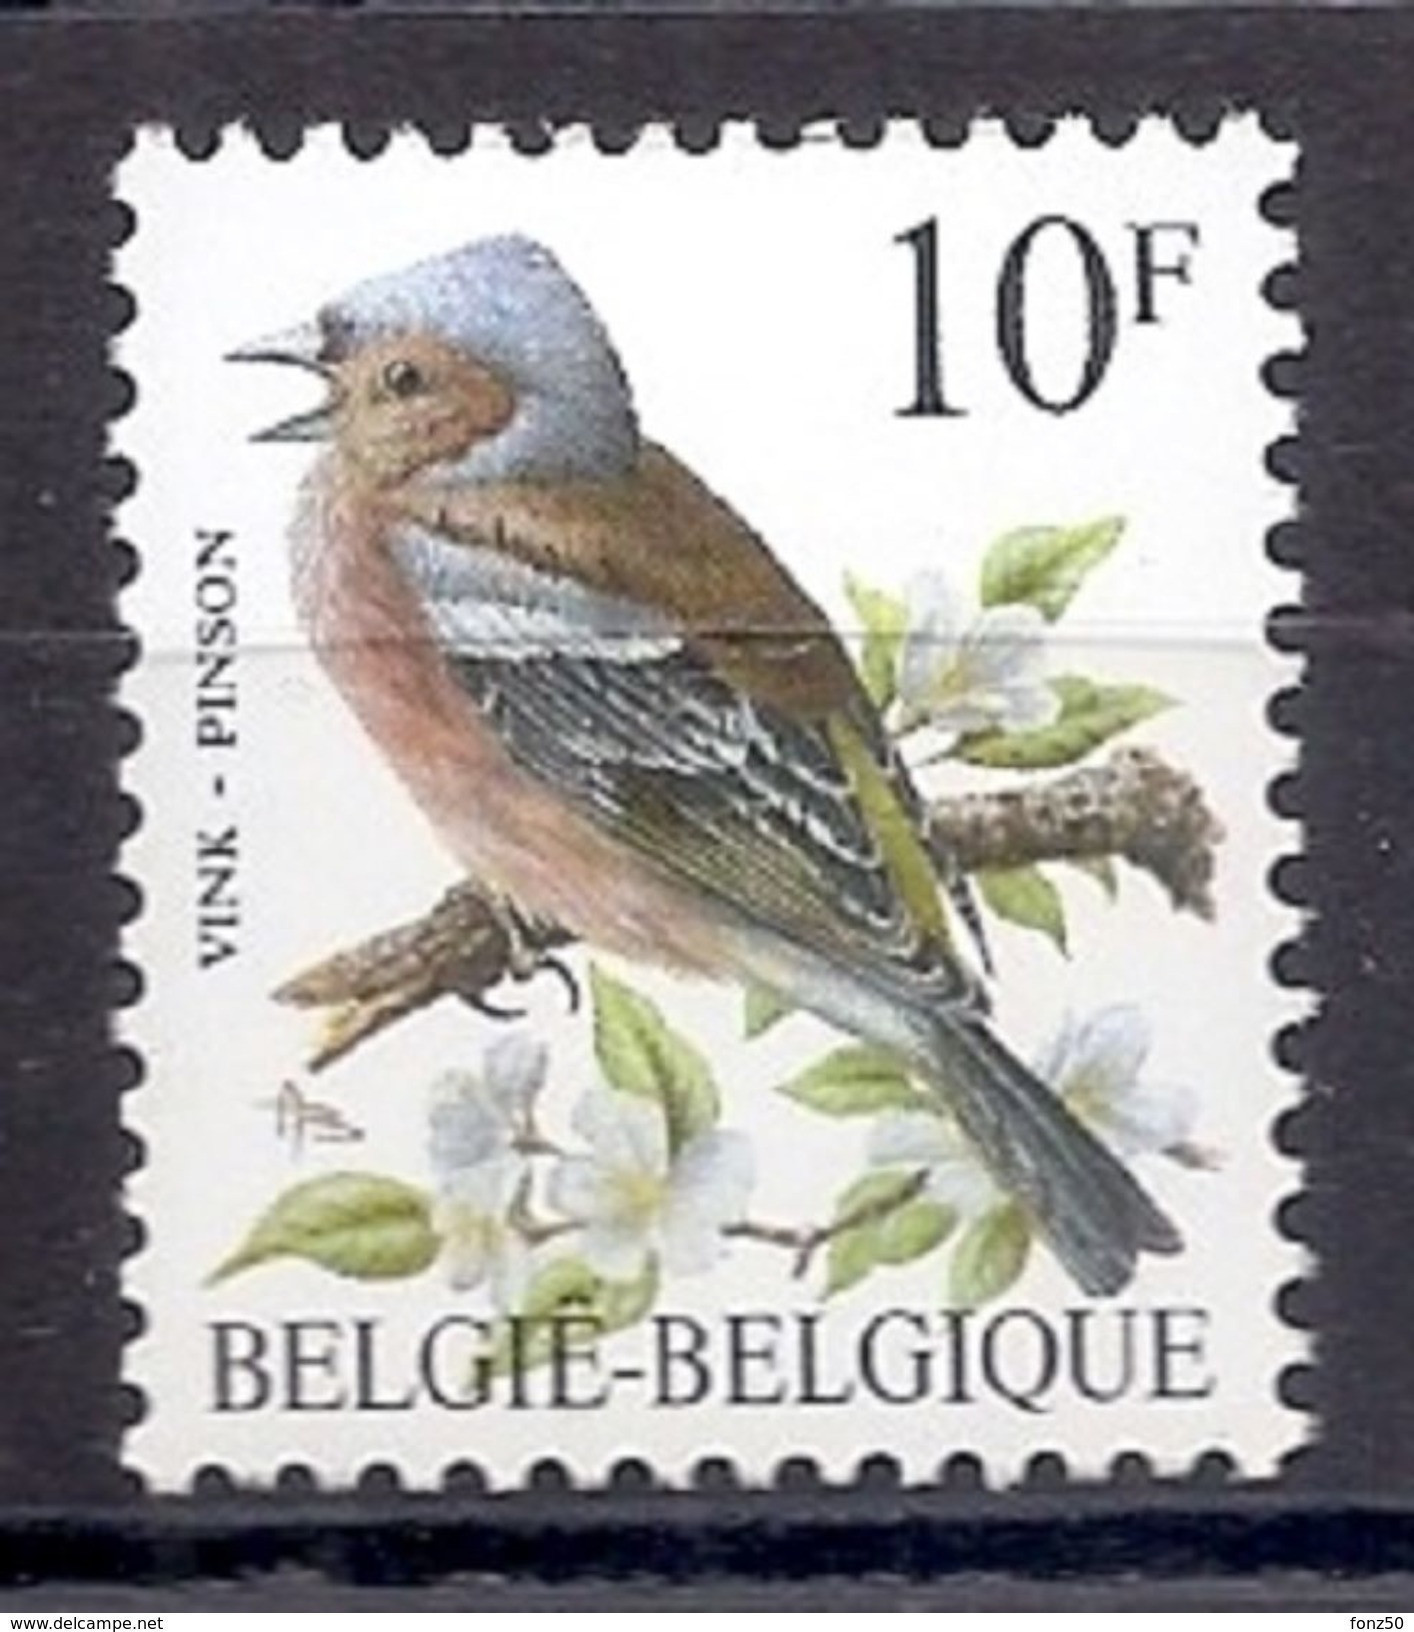 BELGIE * Buzin * Nr 2351 * Postfris Xx * HELDER WIT PAPIER - WITTE GOM - 1985-.. Oiseaux (Buzin)